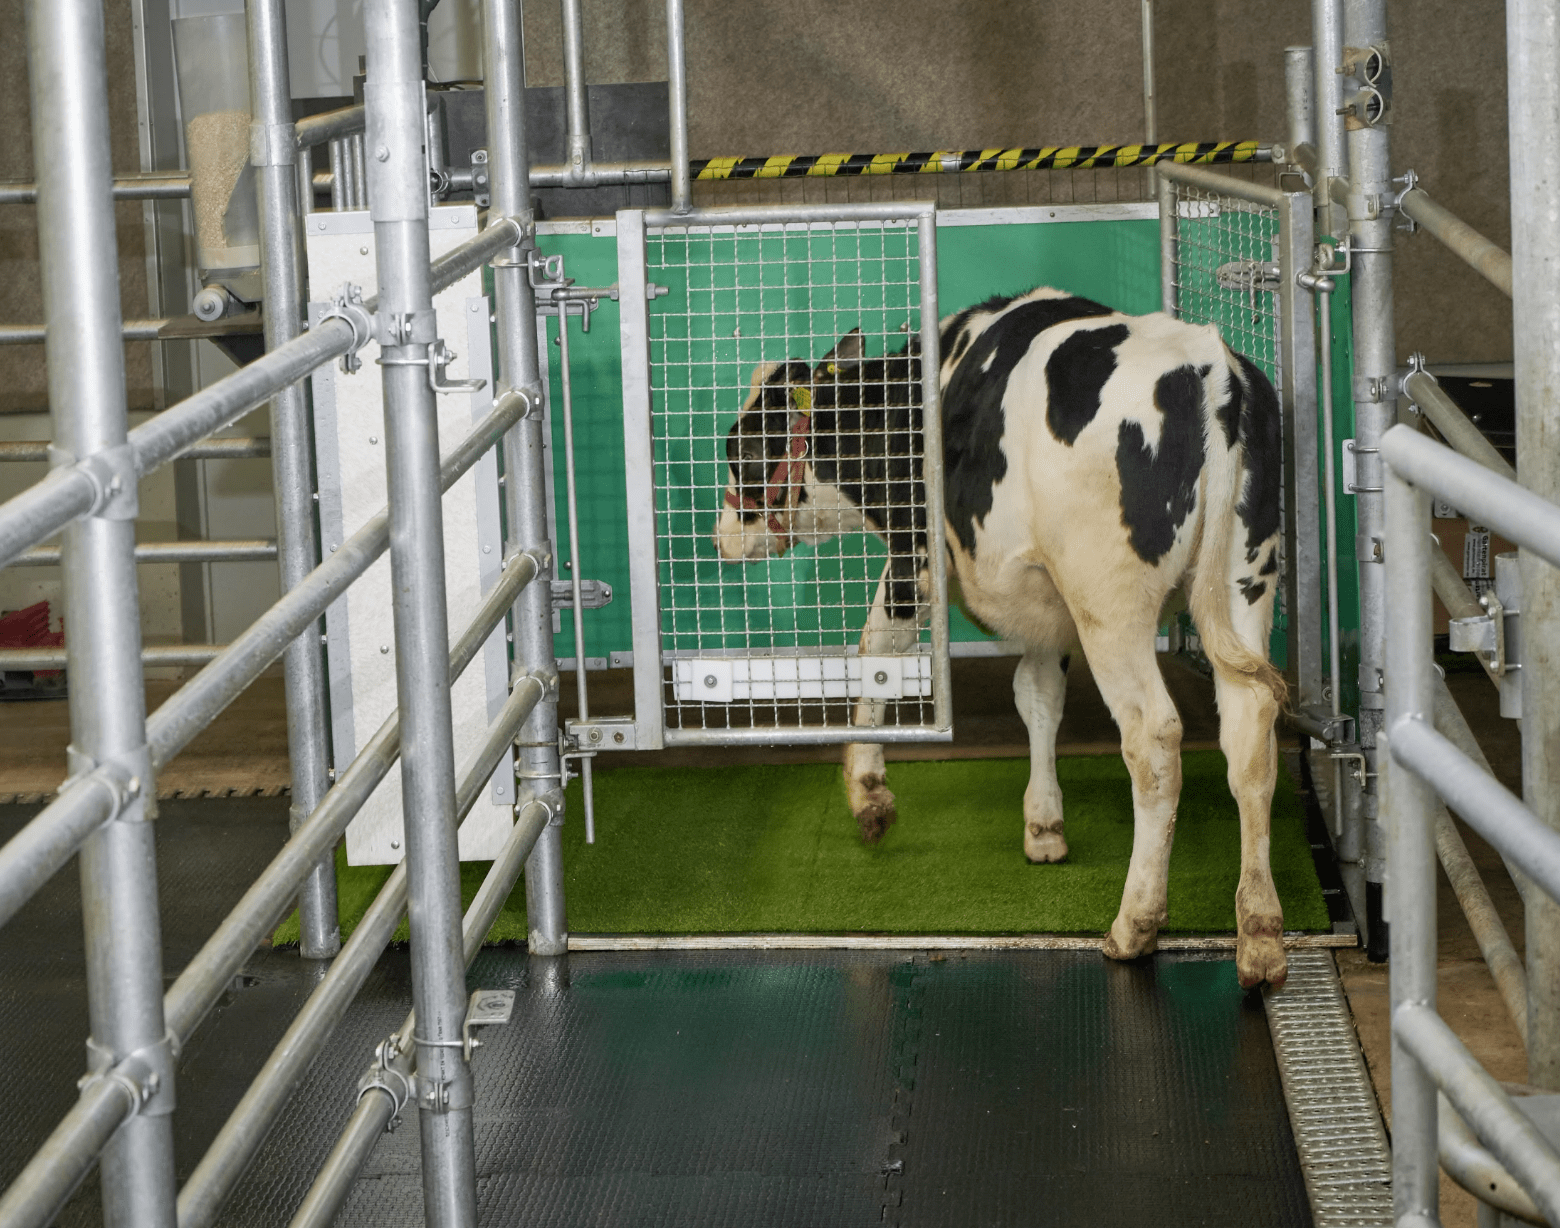 在更卫生的方面,德国和新西兰的研究人员正在研究一种减少养牛场温室